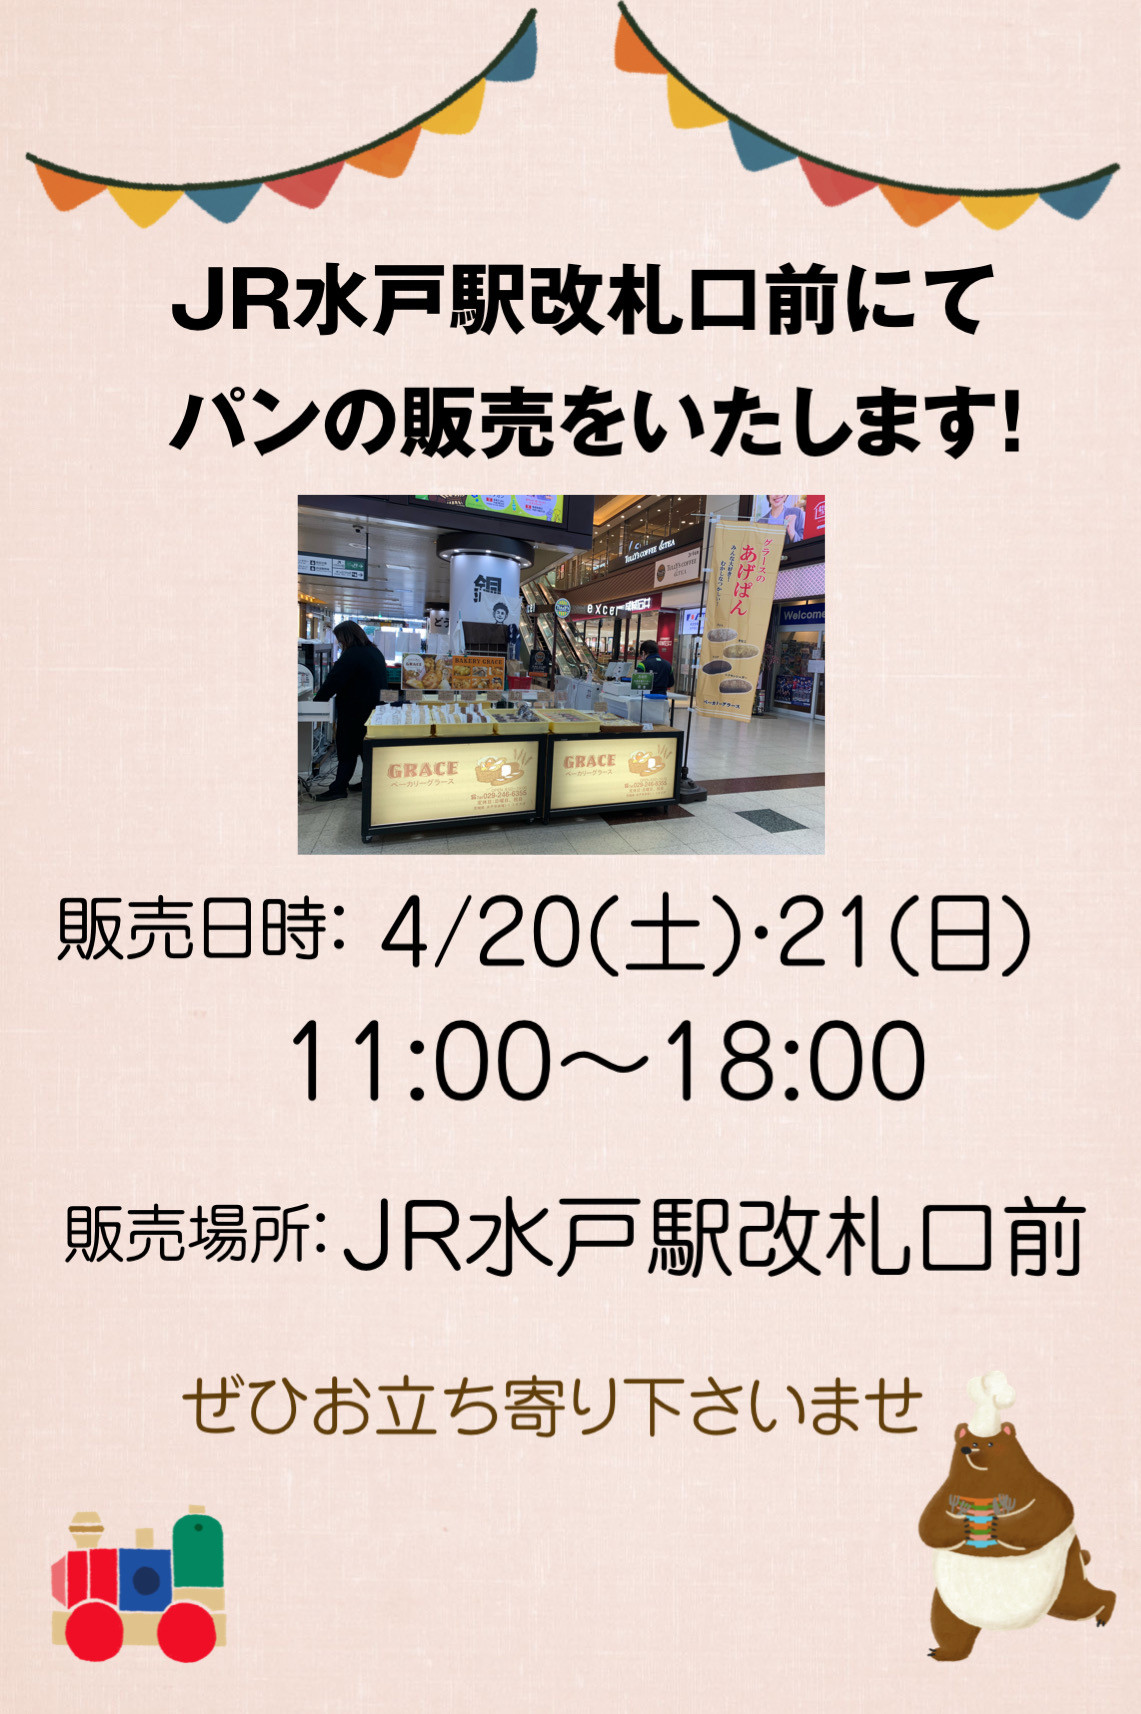 4/20(土).21(日) JR水戸駅改札口前にて販売します